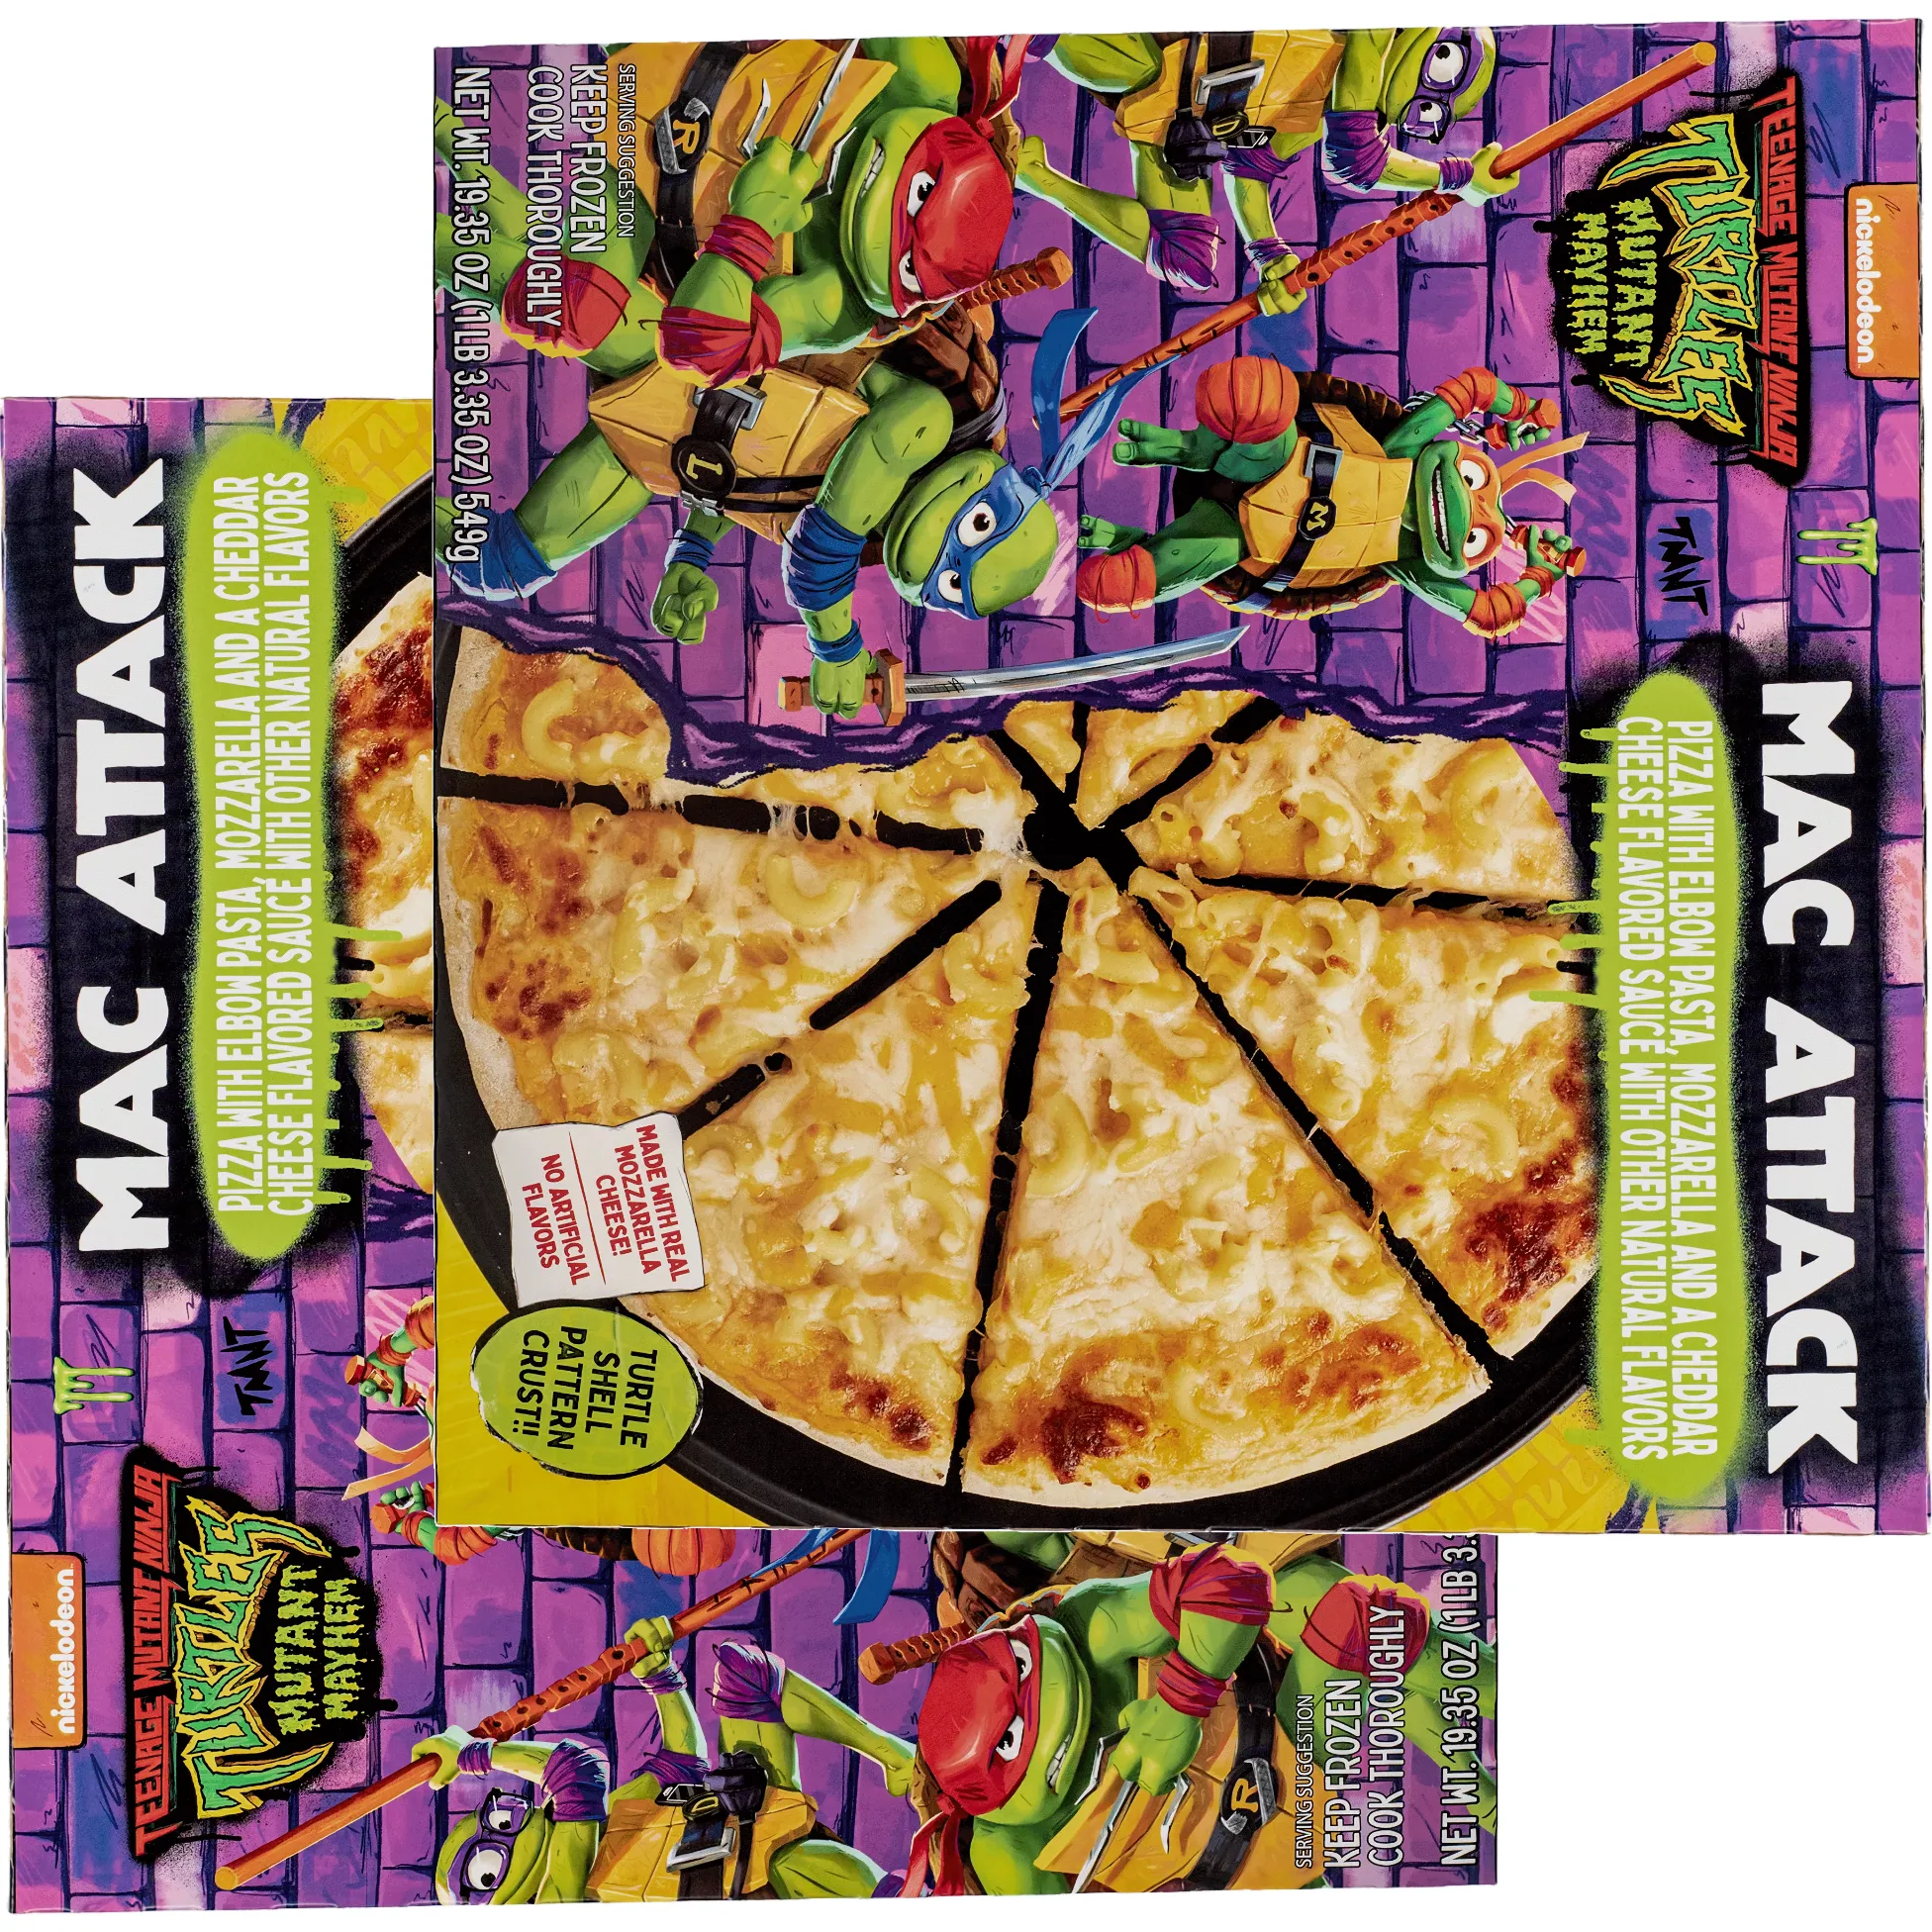 Free Teenage Mutant Ninja Turtles Cowabunga Pizzas